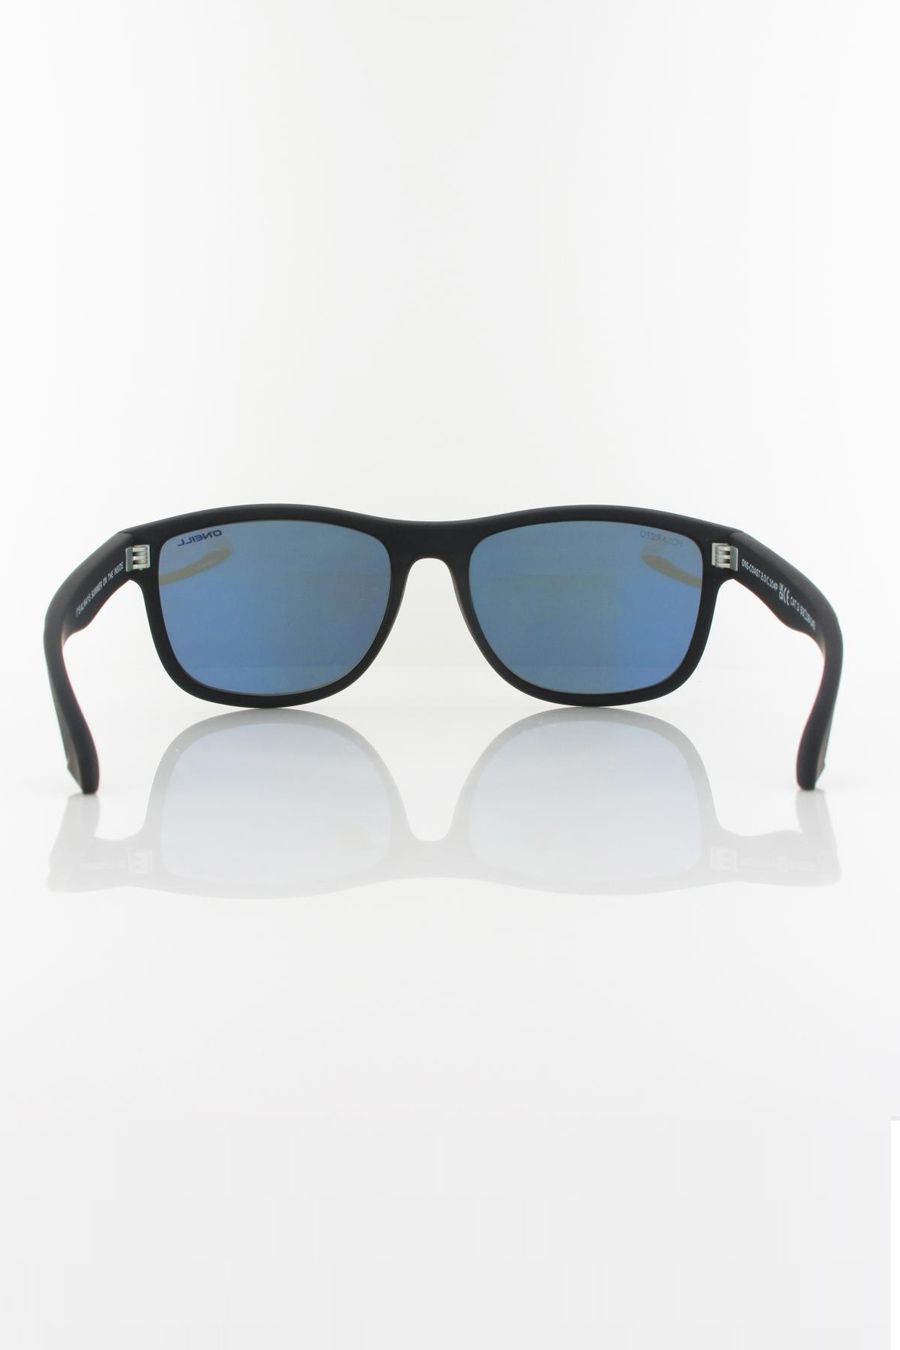 Sunglasses ONEILL ONS-COAST20-104P